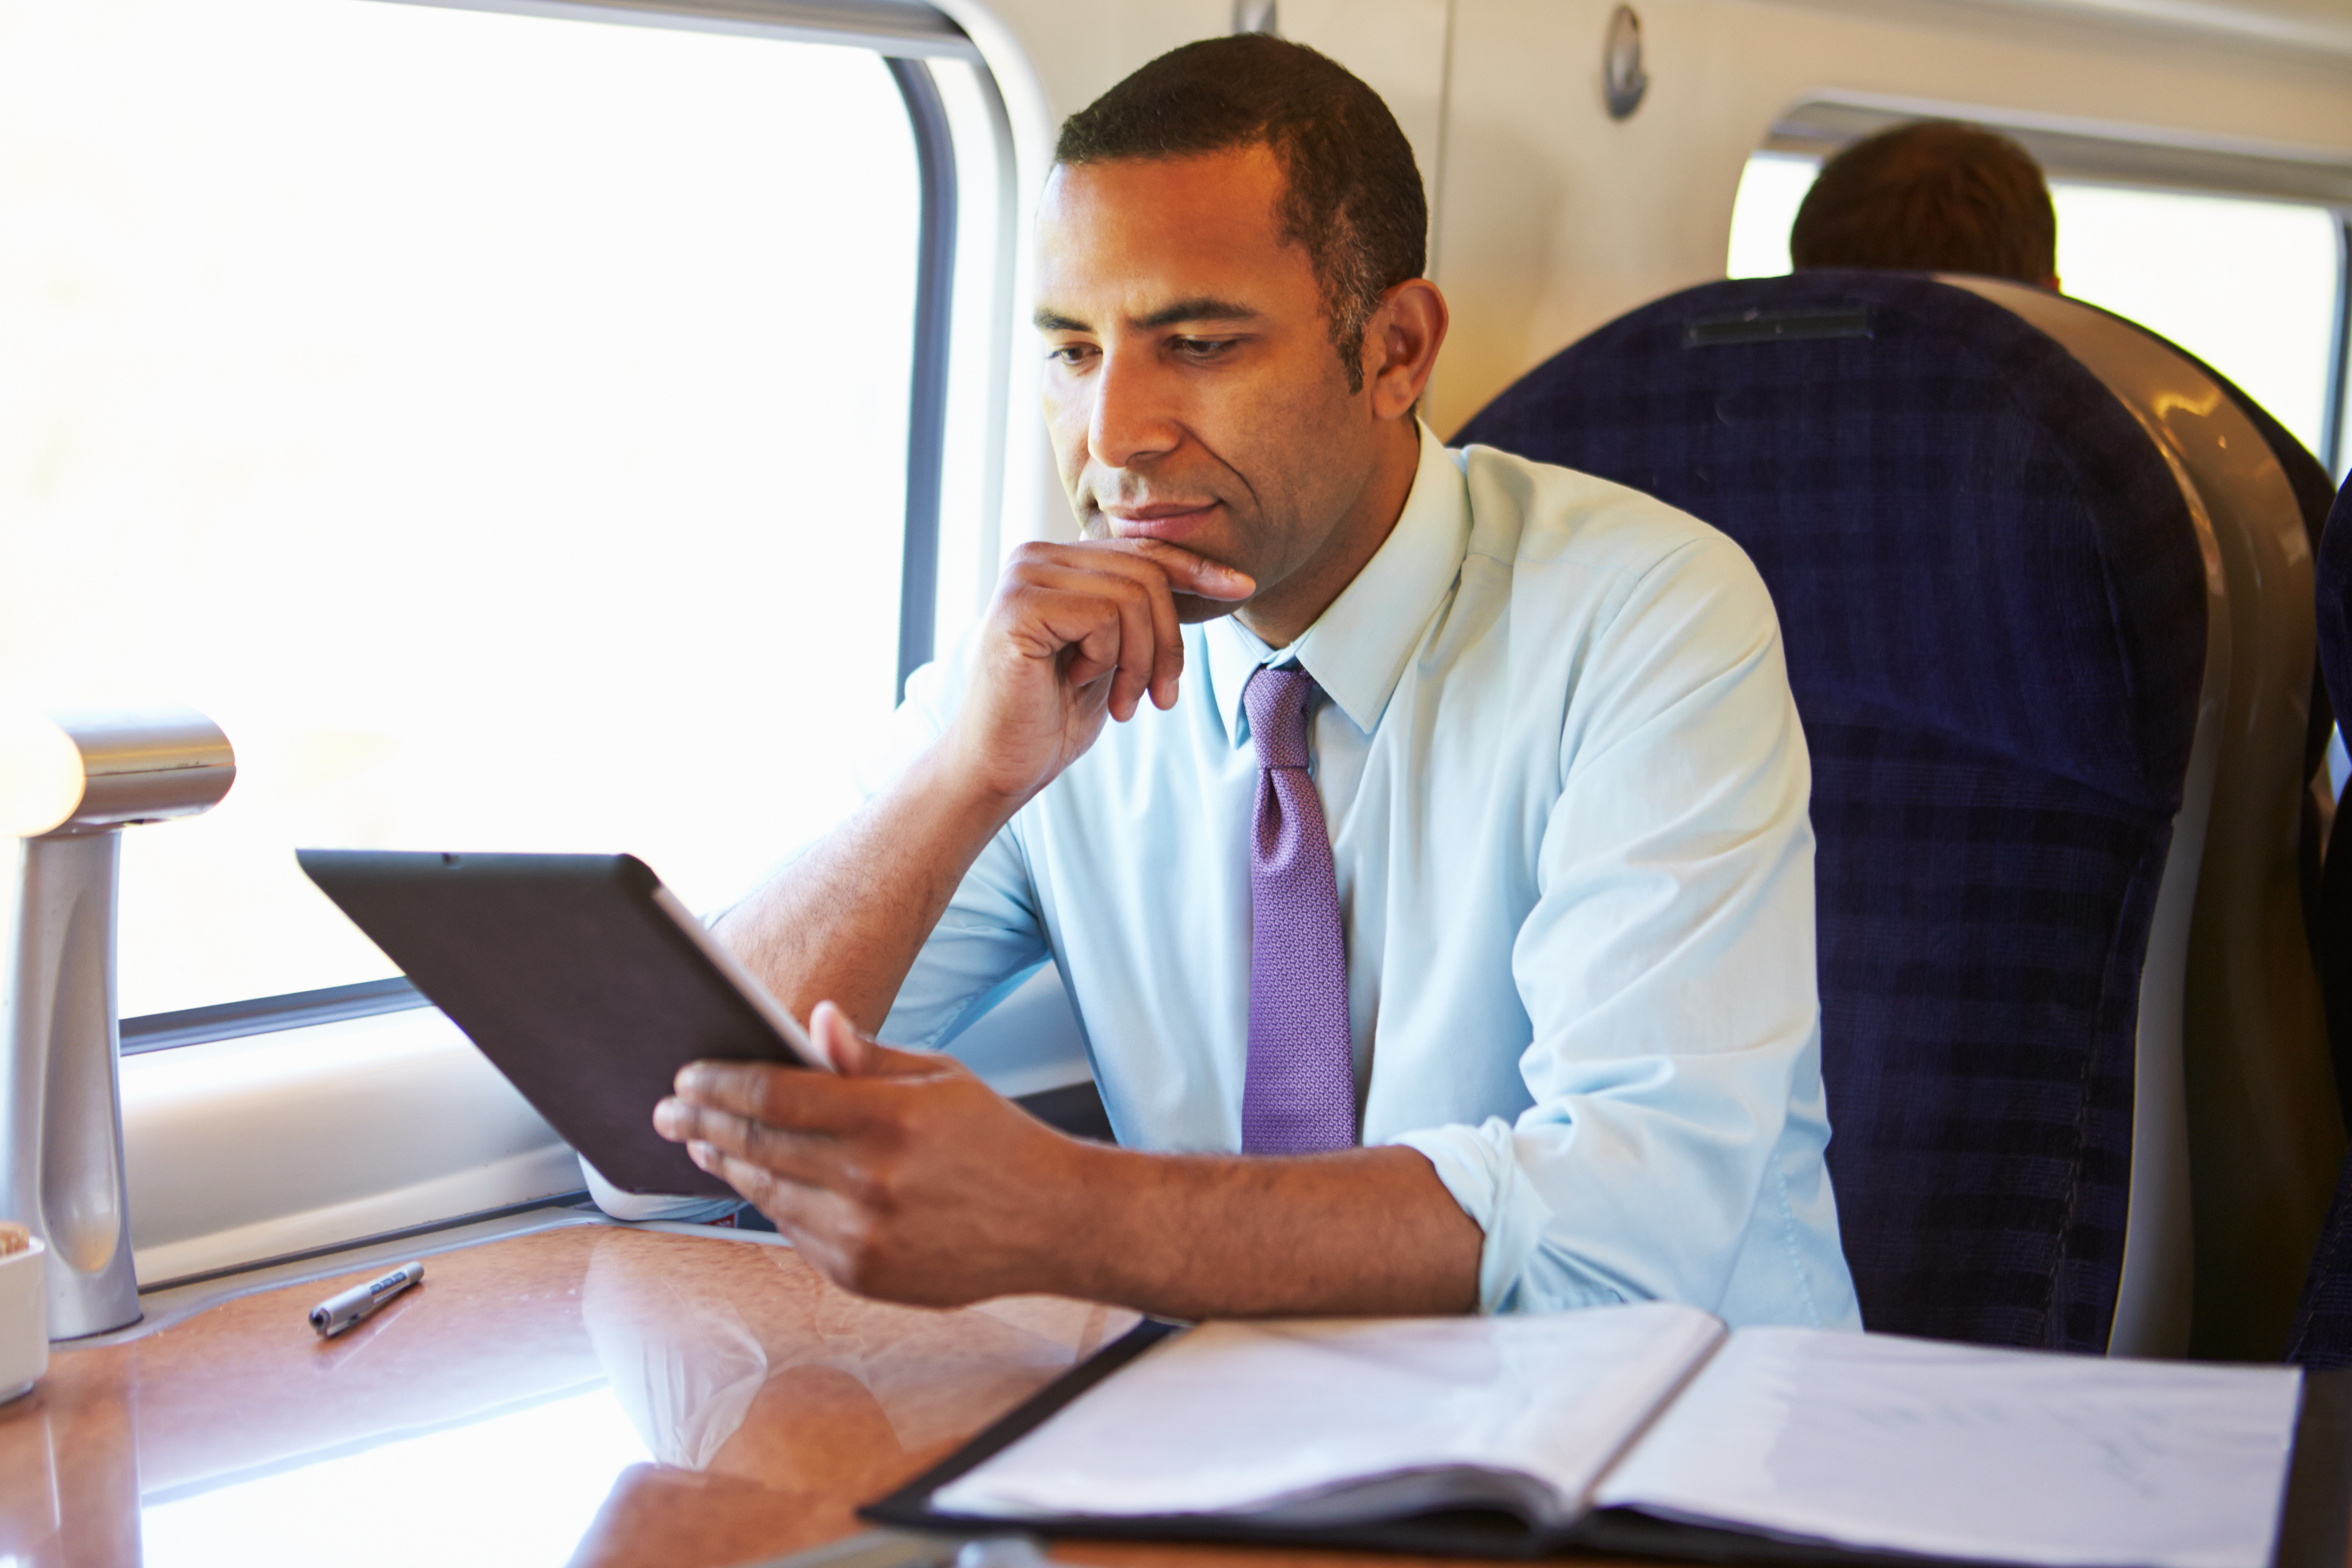 Un homme assis près d'une fenêtre d'un train | Source : Shutterstock